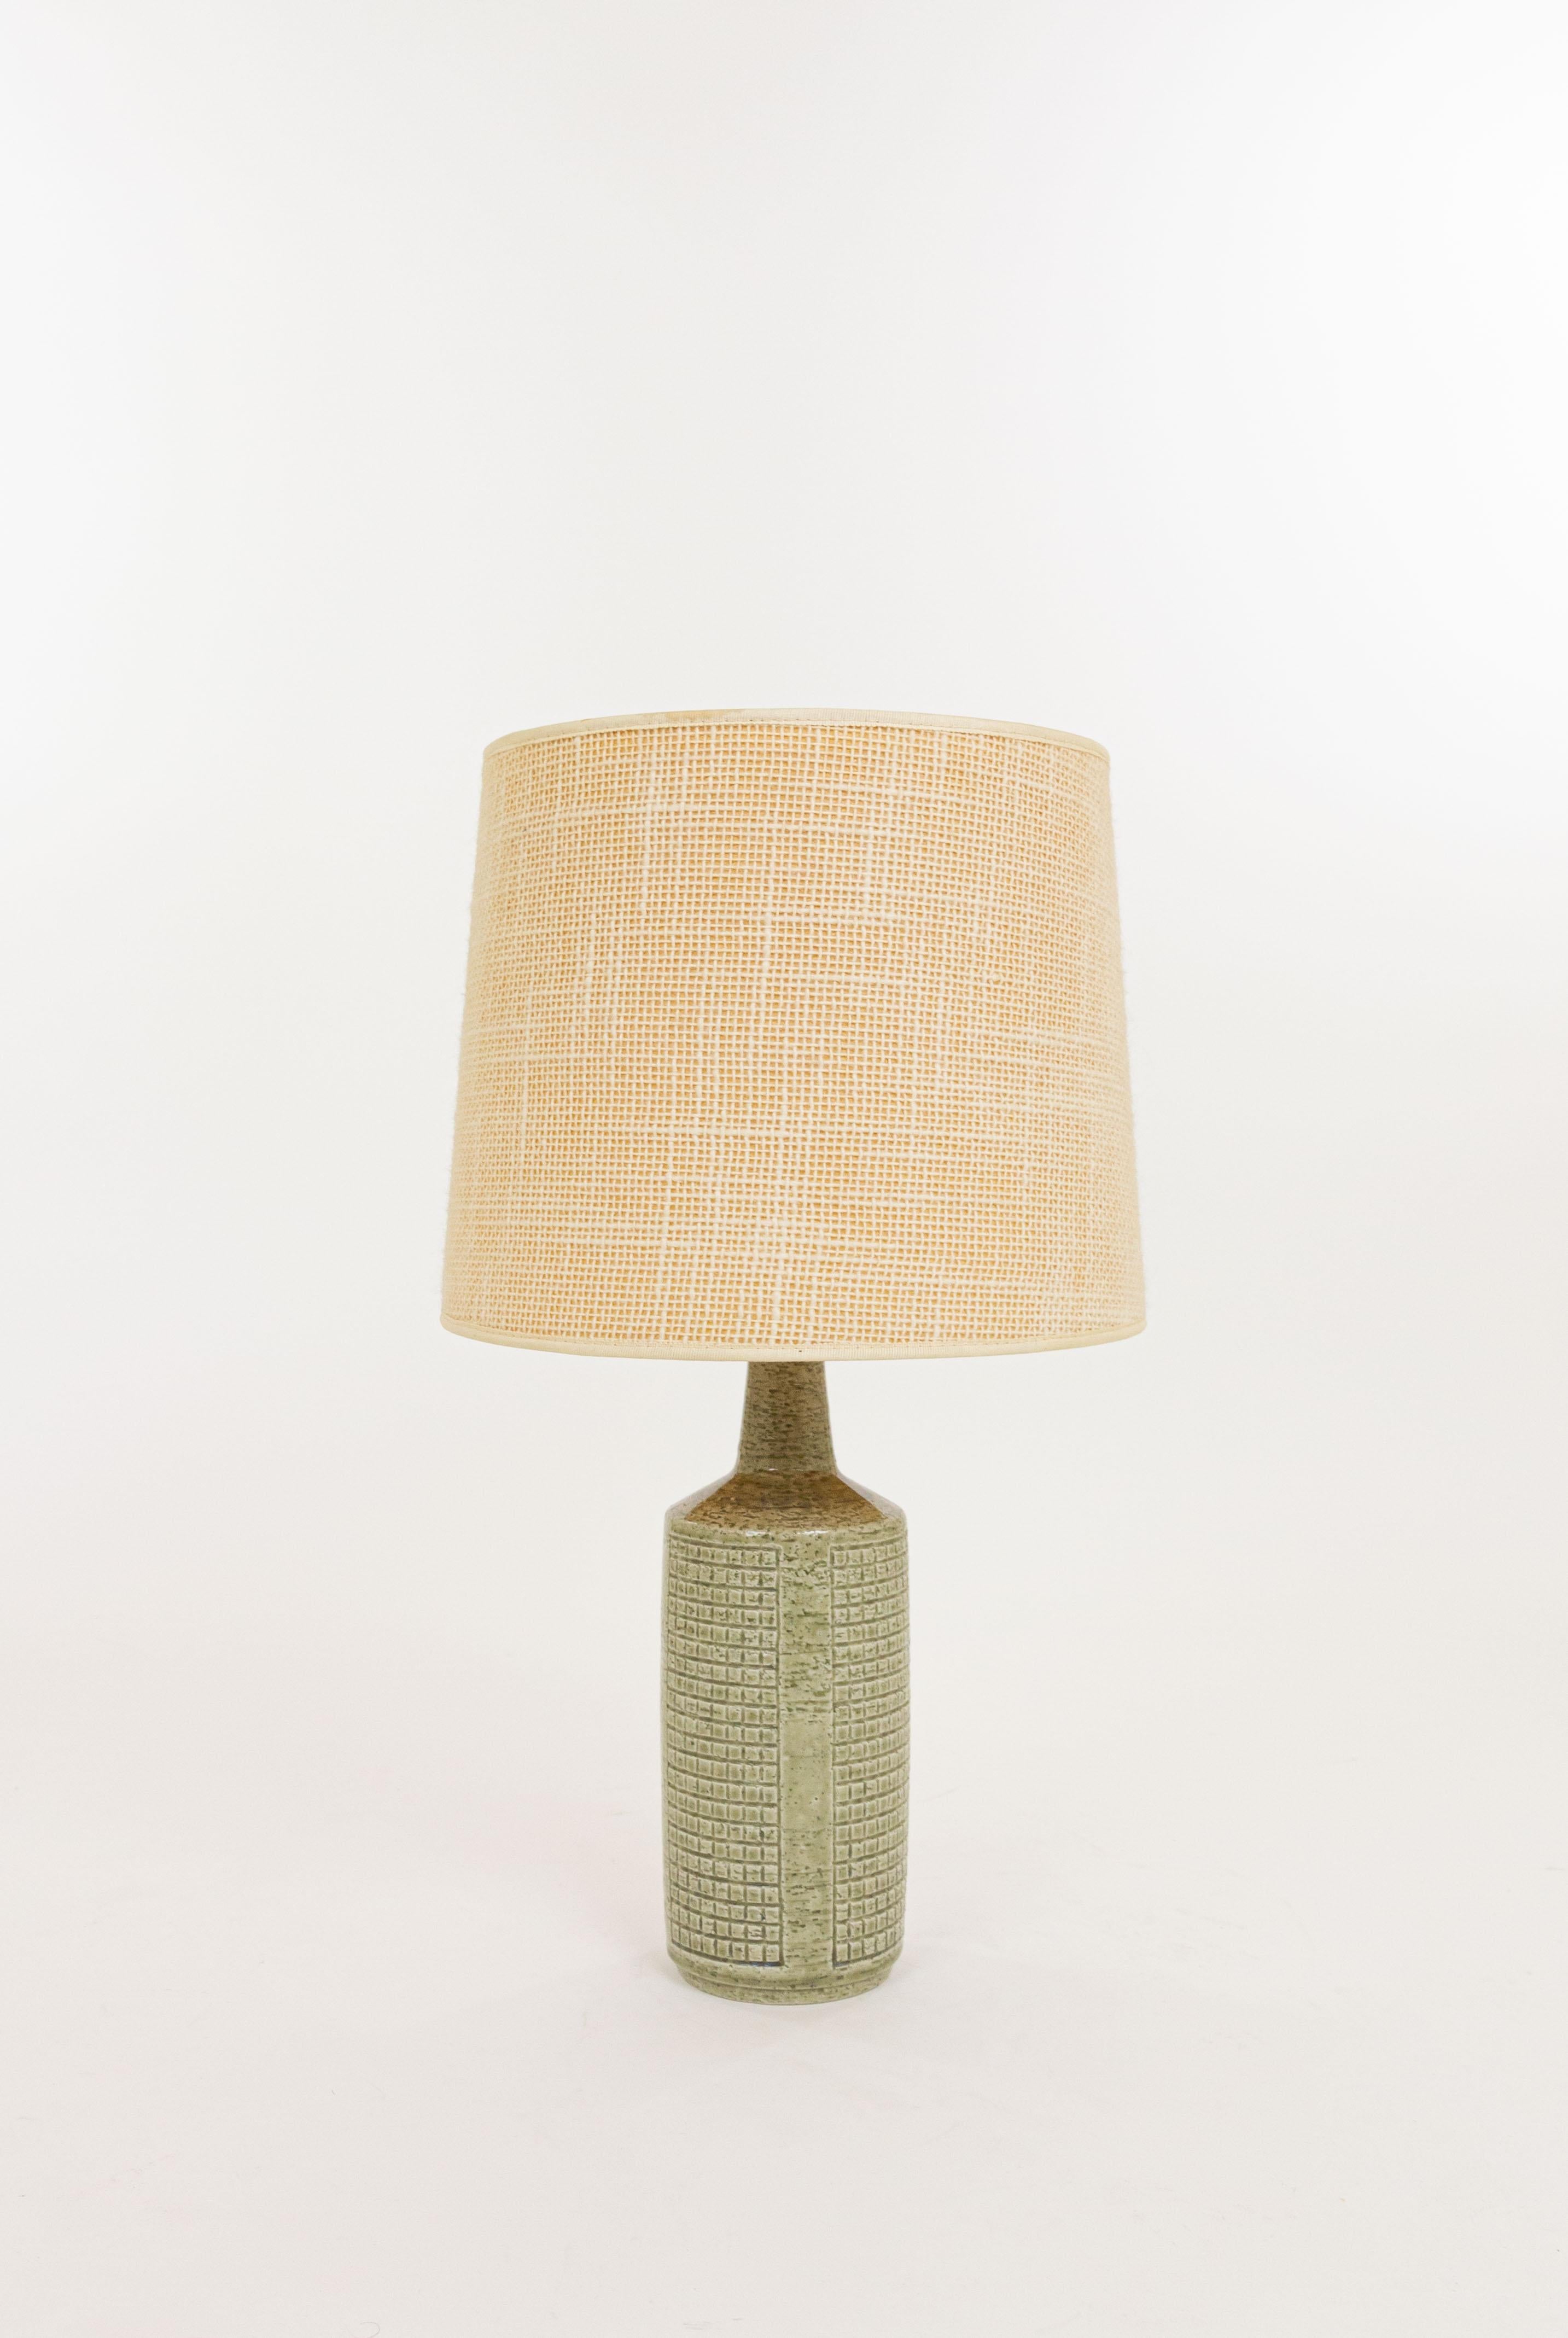 Scandinavian Modern Green DL/30 table lamp by Linnemann-Schmidt for Palshus, 1960s For Sale